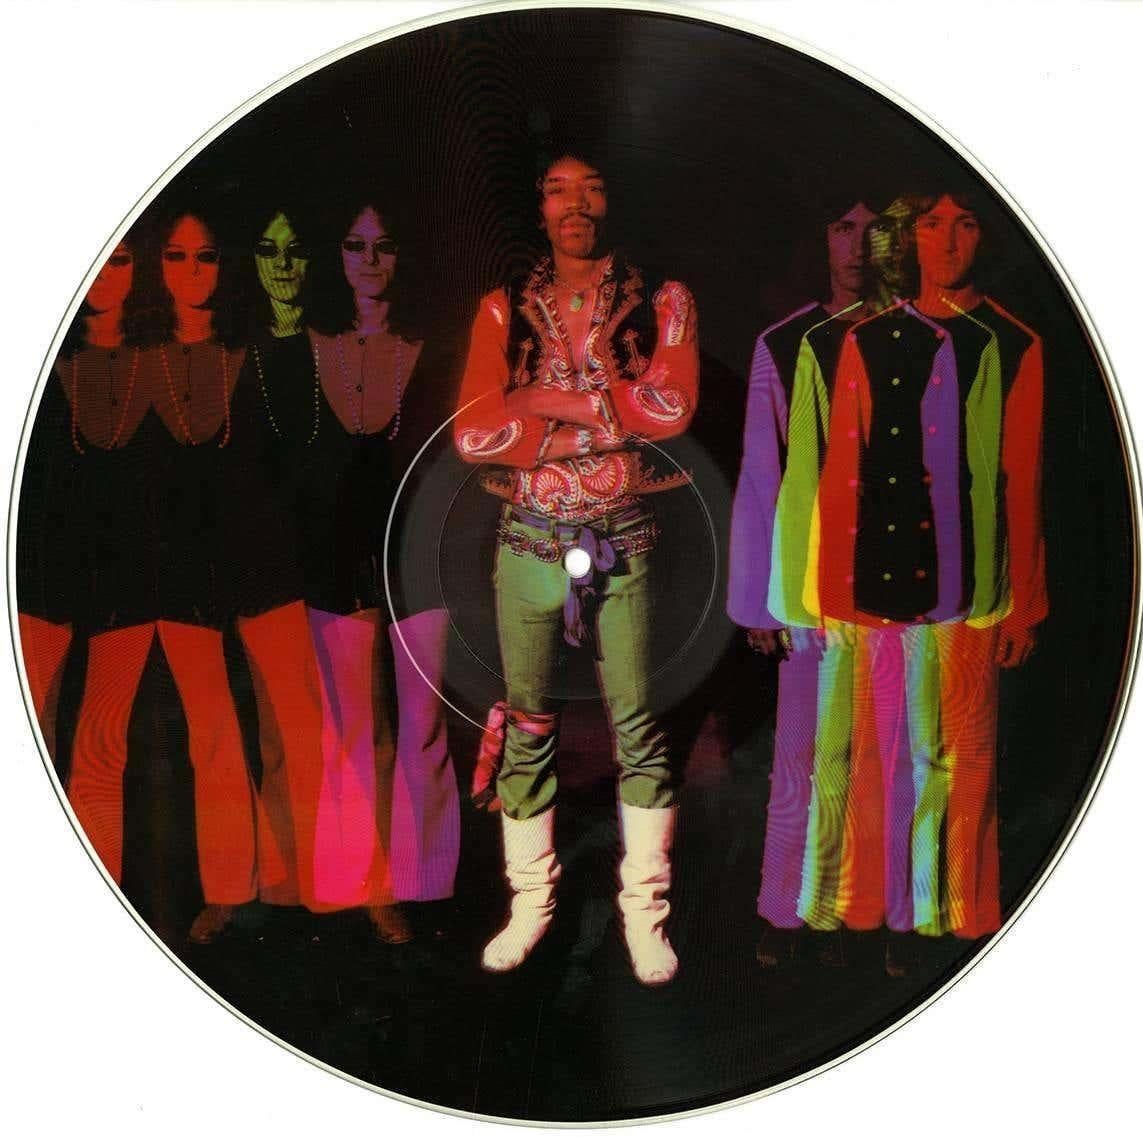 Beidseitig mit Fotos von Michael Ochs illustrierte Vintage-Schallplatte von Jimi Hendrix: The Interview, veröffentlicht 1982.

Maße: 12 x 12 Zoll. 

Sieht gerahmt brillant aus.

Inklusive original gestanzter Coverhülle. Insgesamt sehr schöner